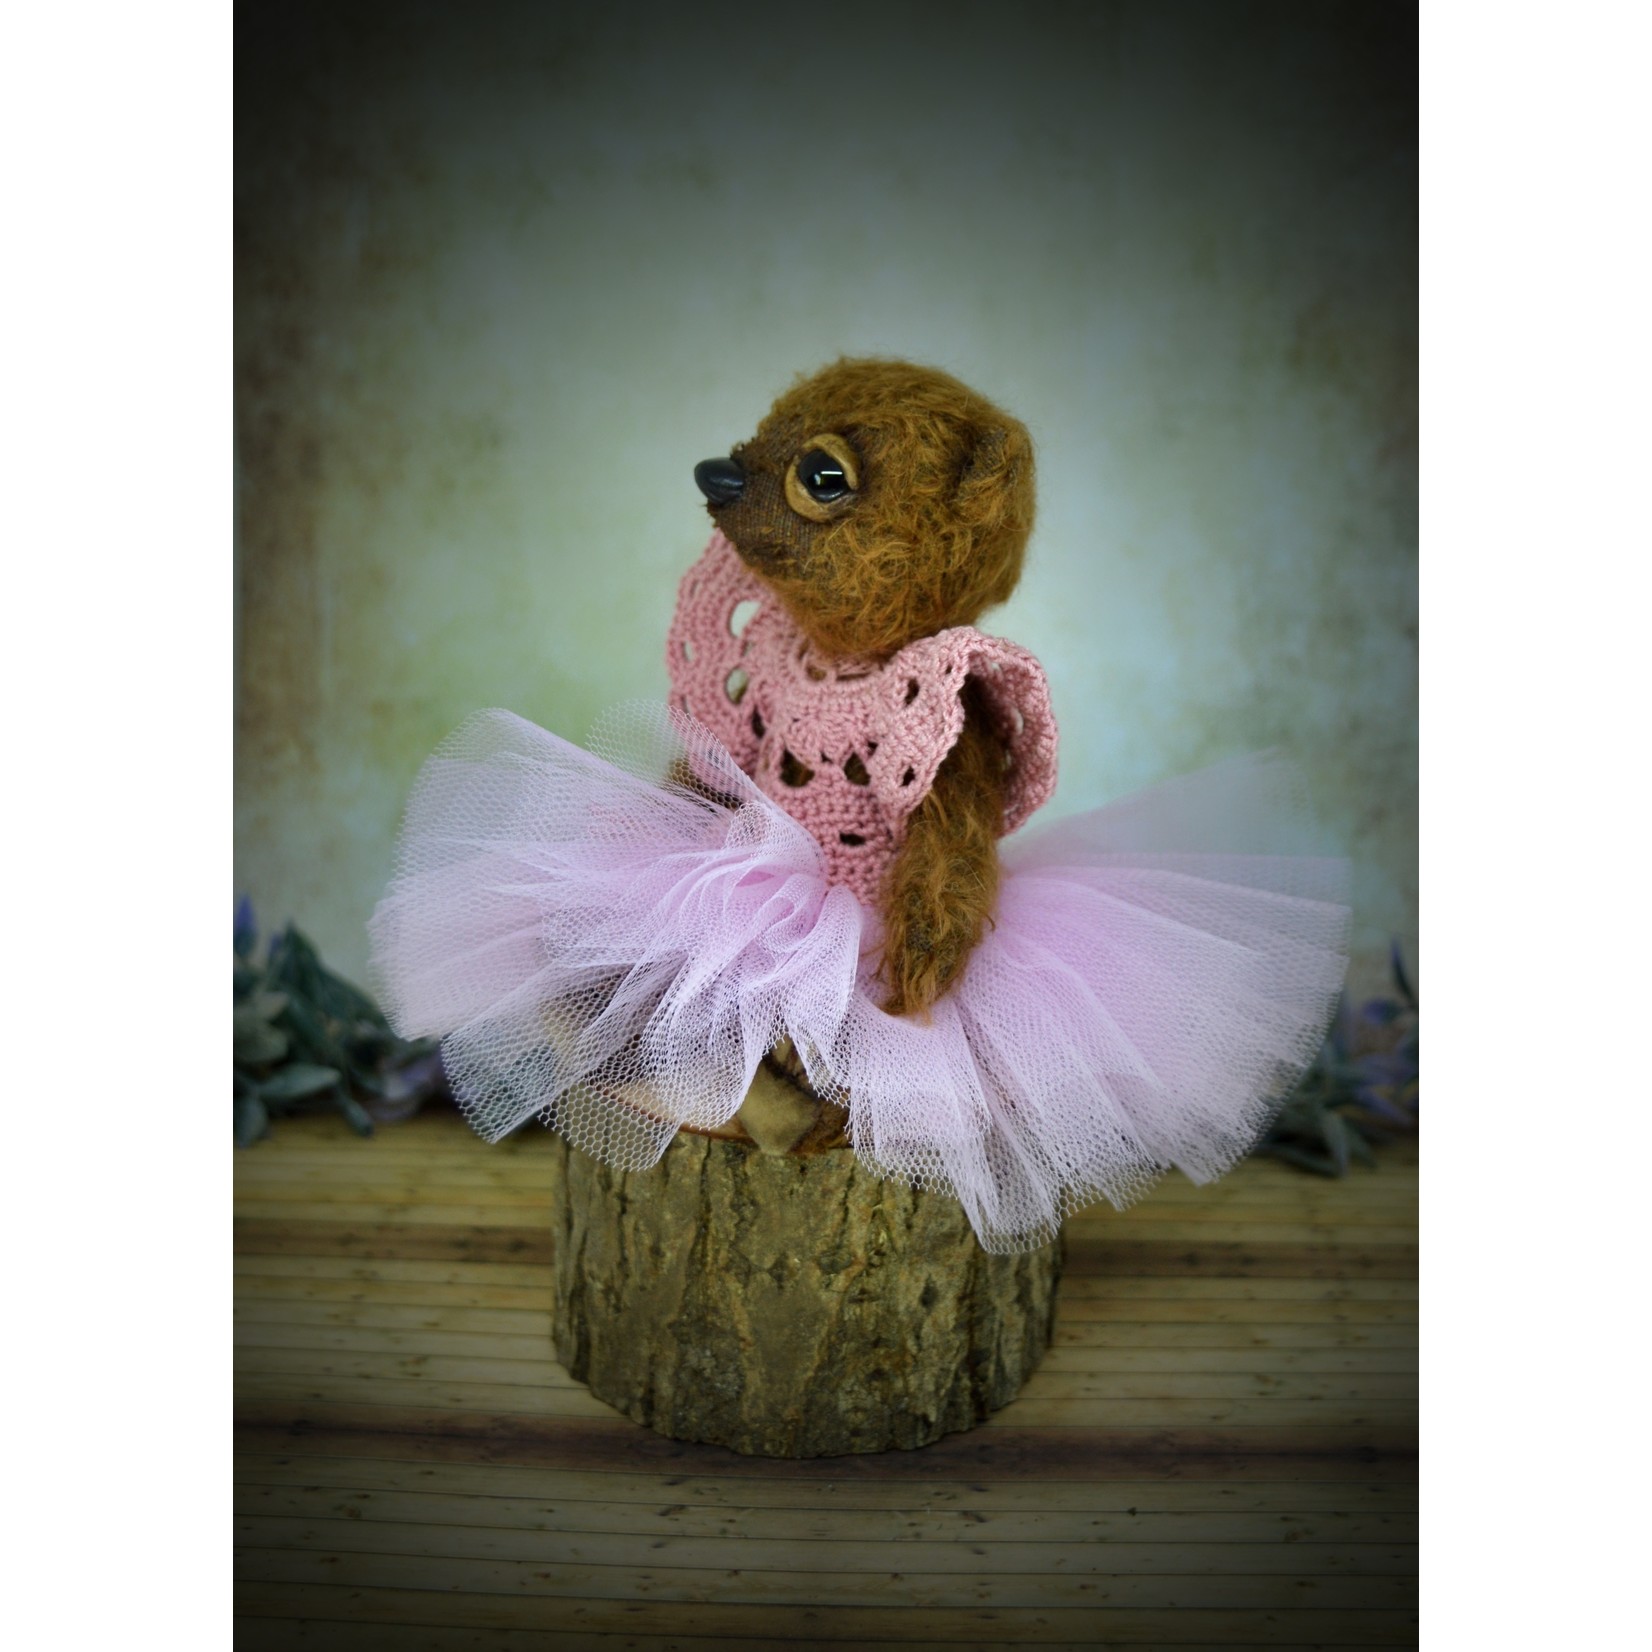 A Furrylicious original -  Lilly the ballet bear